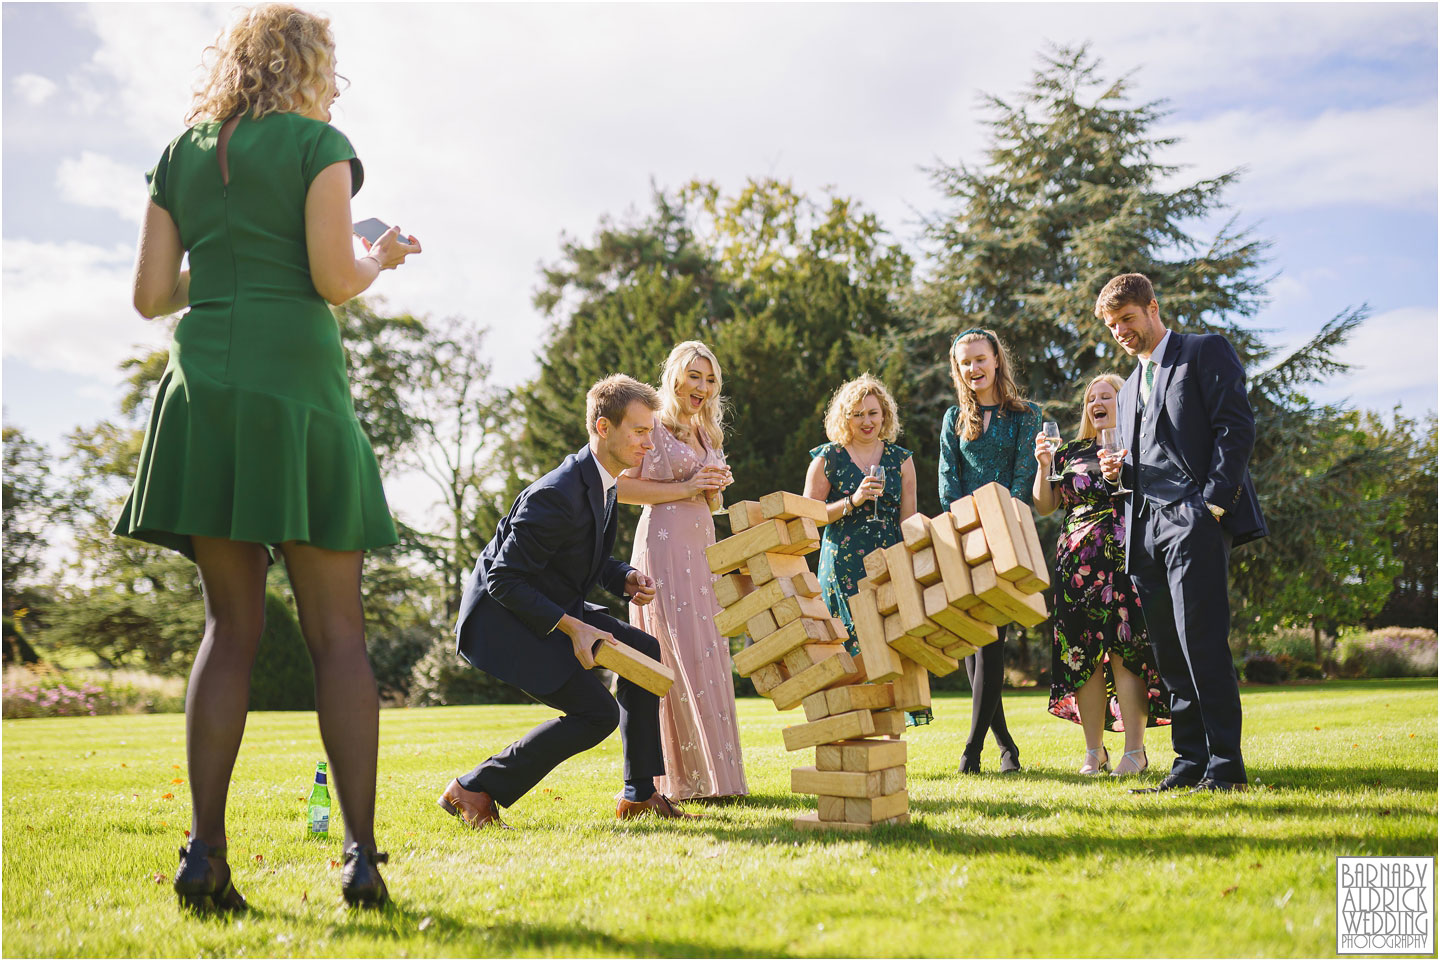 Wedding lawn games Yorkshire